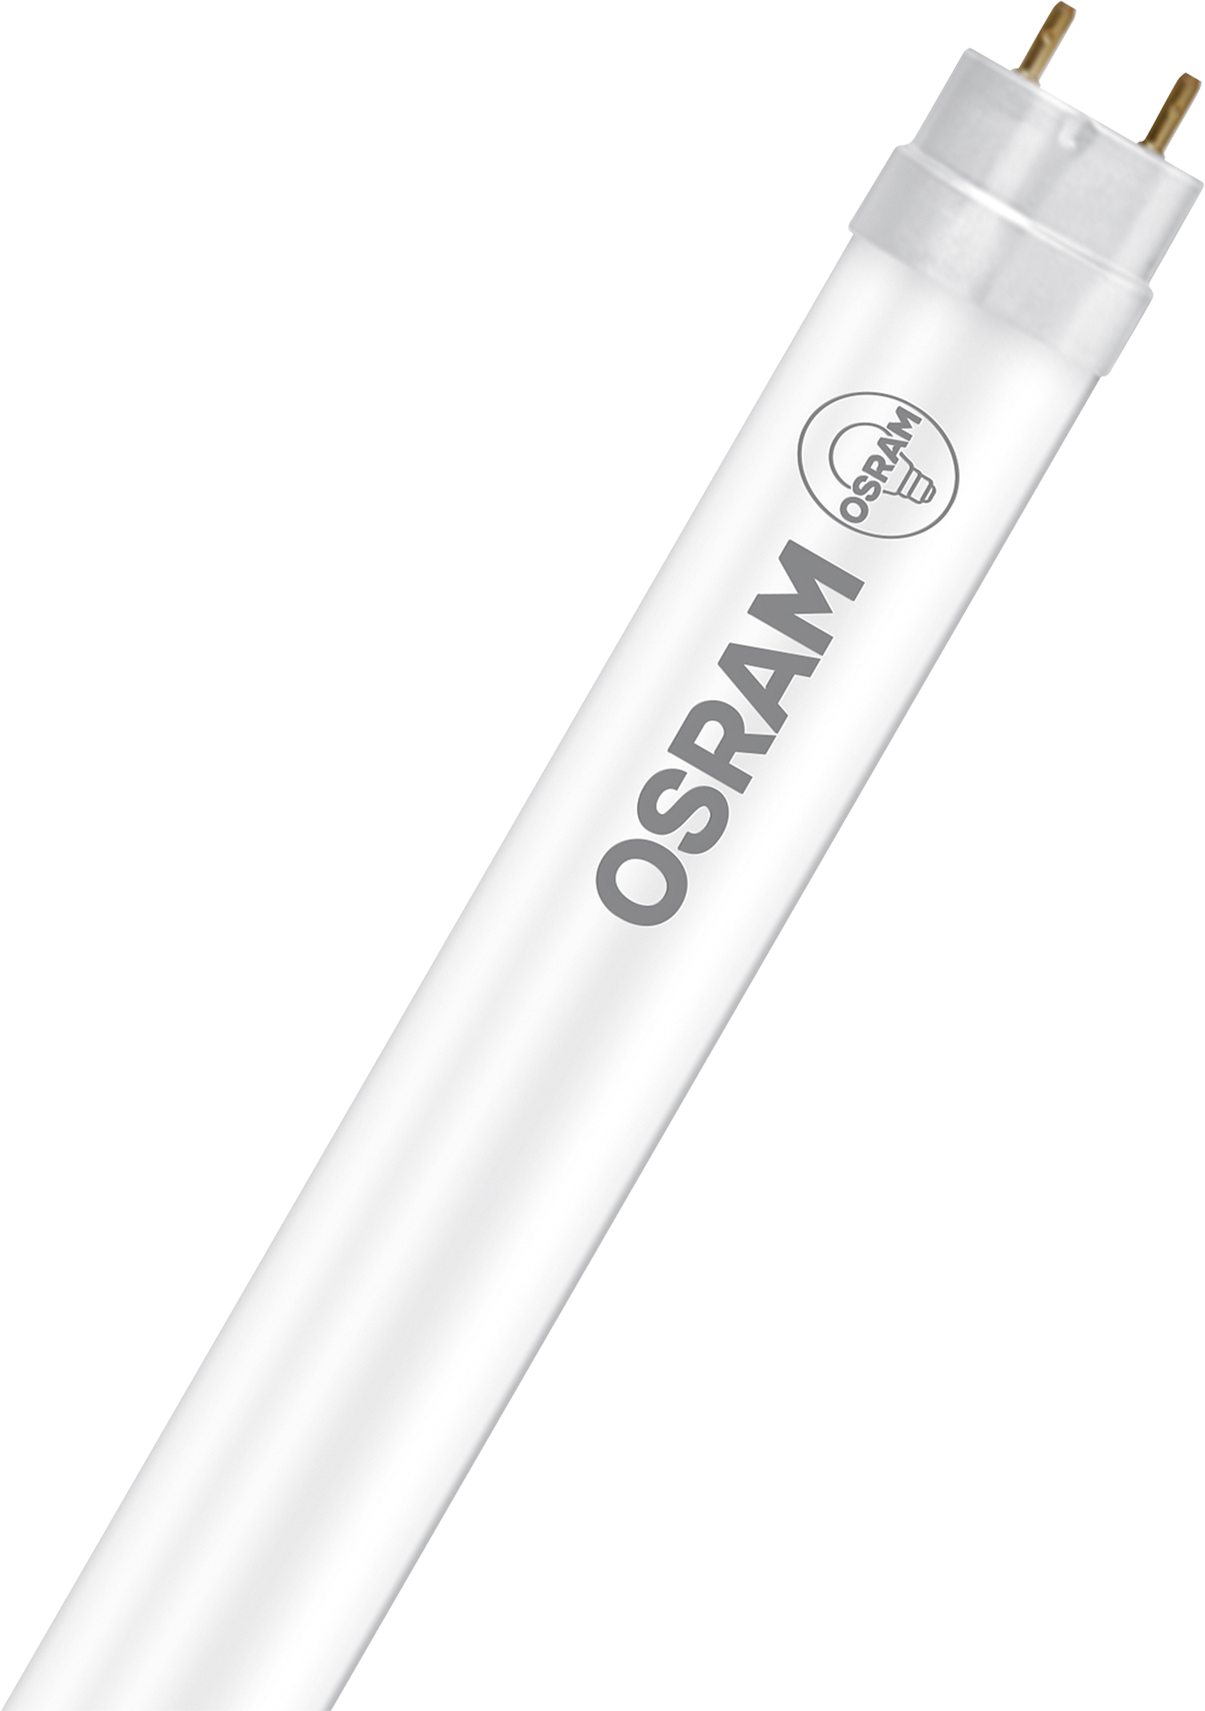 OSRAM Leuchtstofflampe T8 G13, 15.0W, 1620lm, warm white - Lampen, Leuchten